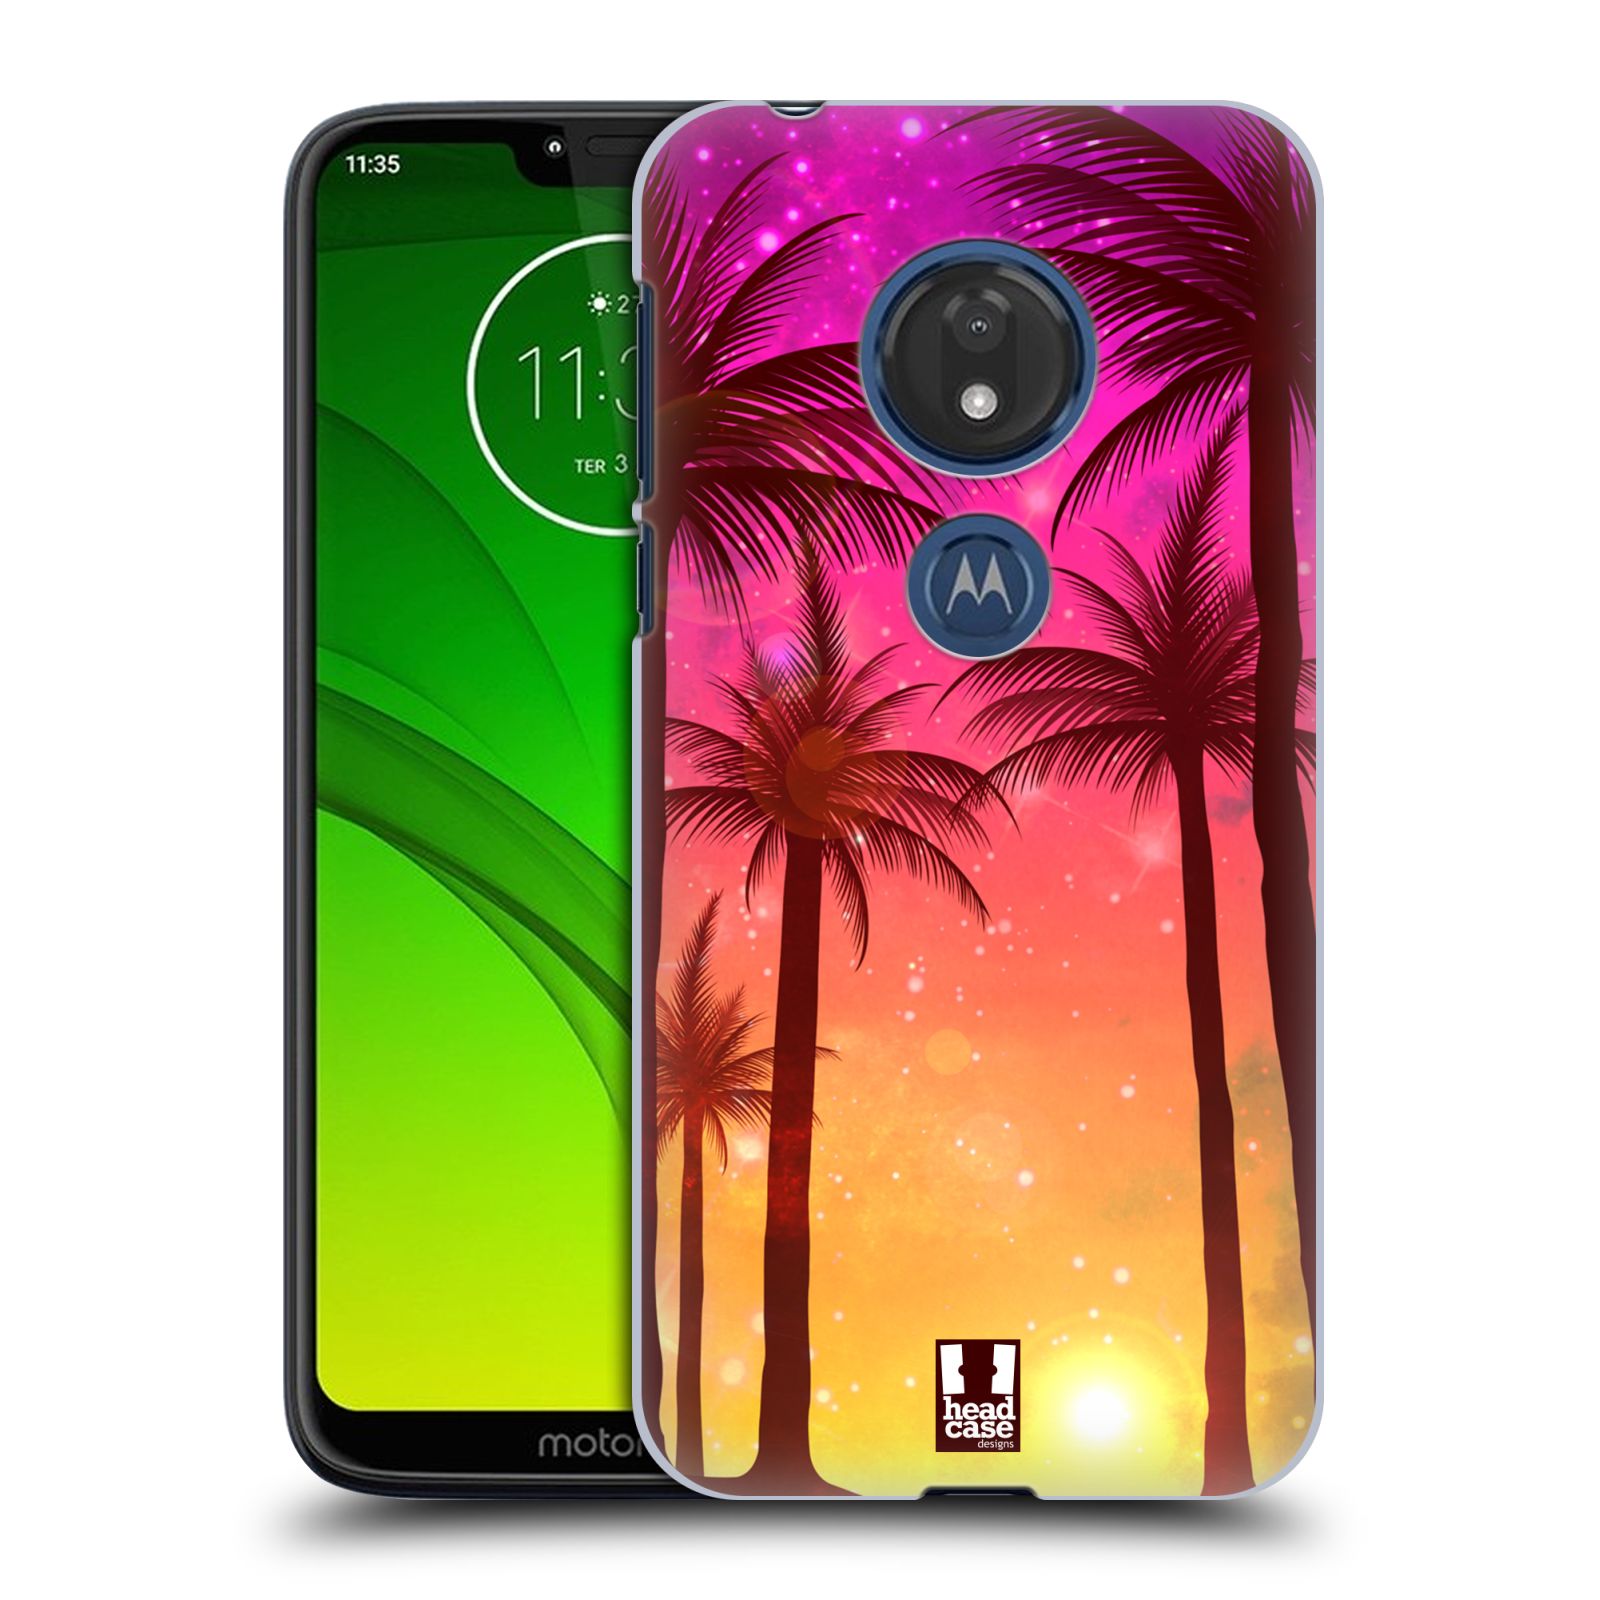 Pouzdro na mobil Motorola Moto G7 Play vzor Kreslený motiv silueta moře a palmy RŮŽOVÁ